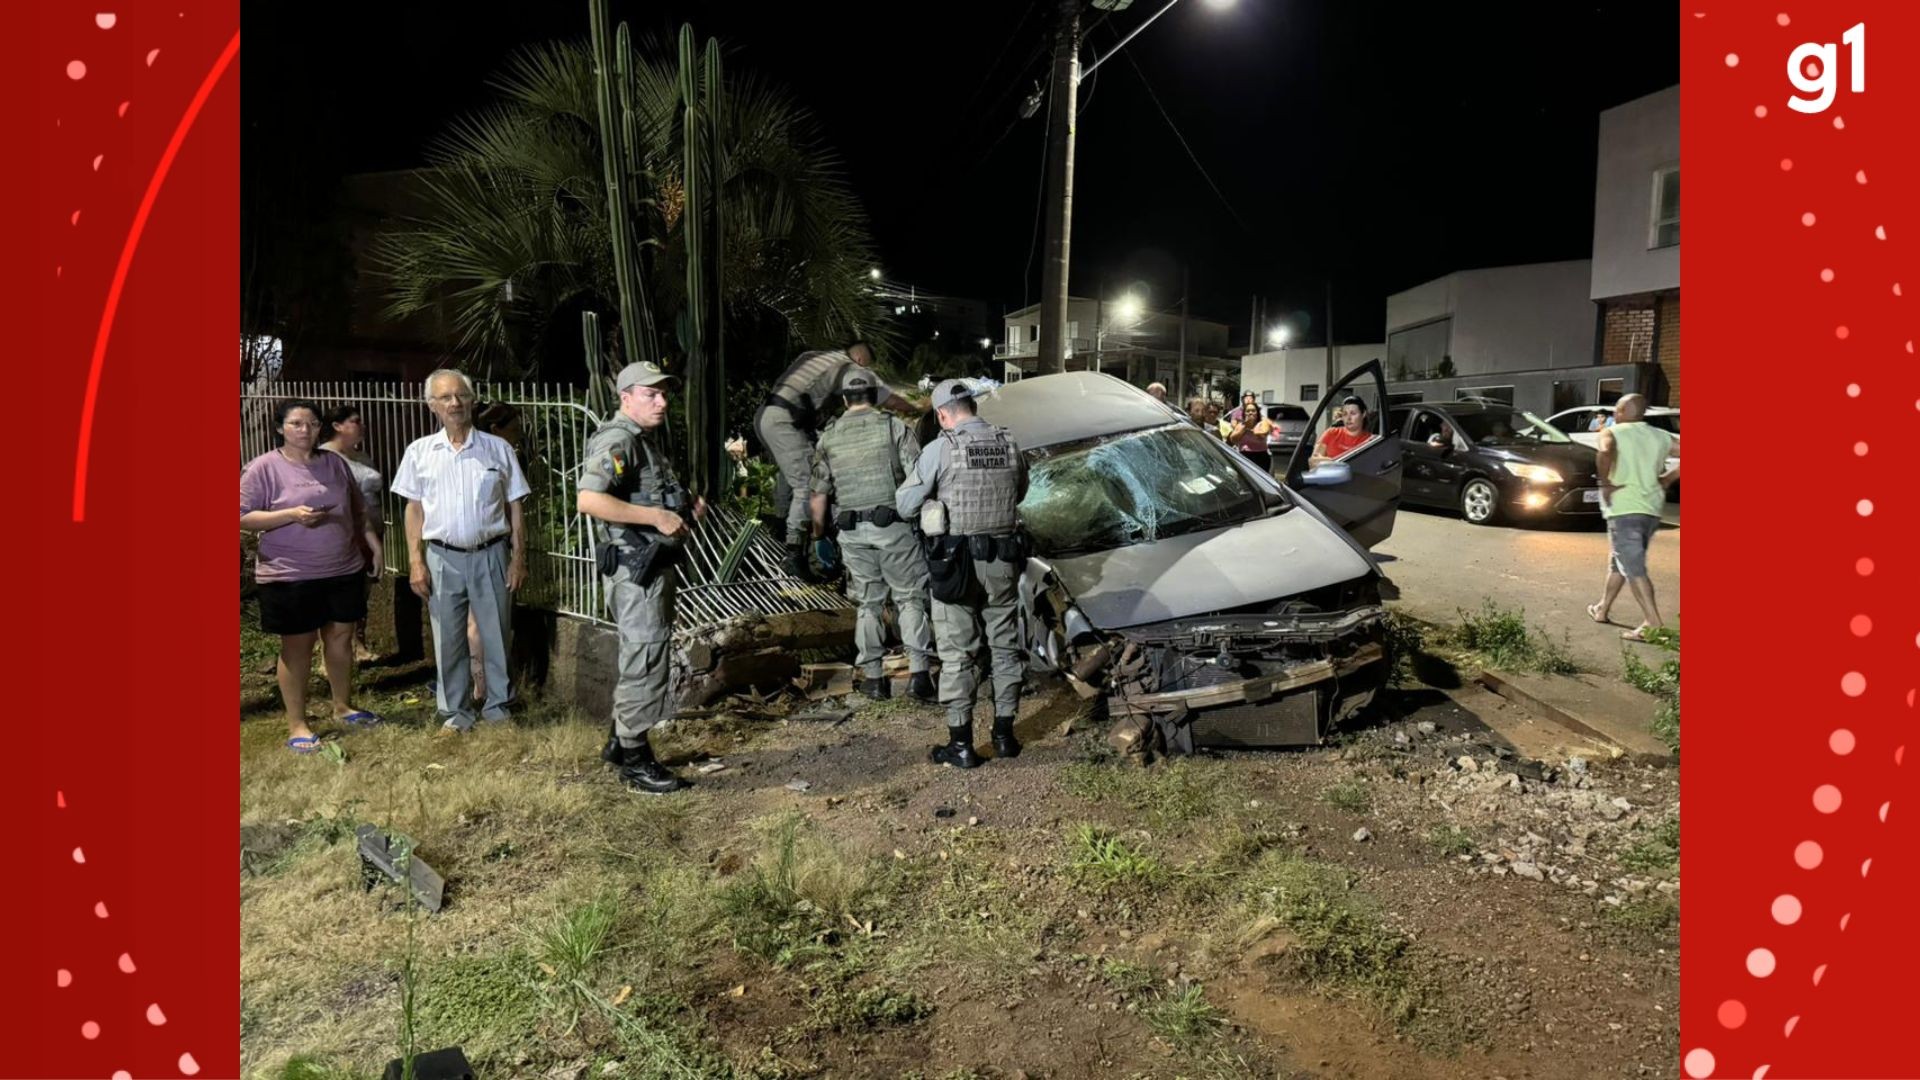 Motorista com sinais de embriaguez atropela três pessoas e é preso em flagrante em Erechim, diz polícia